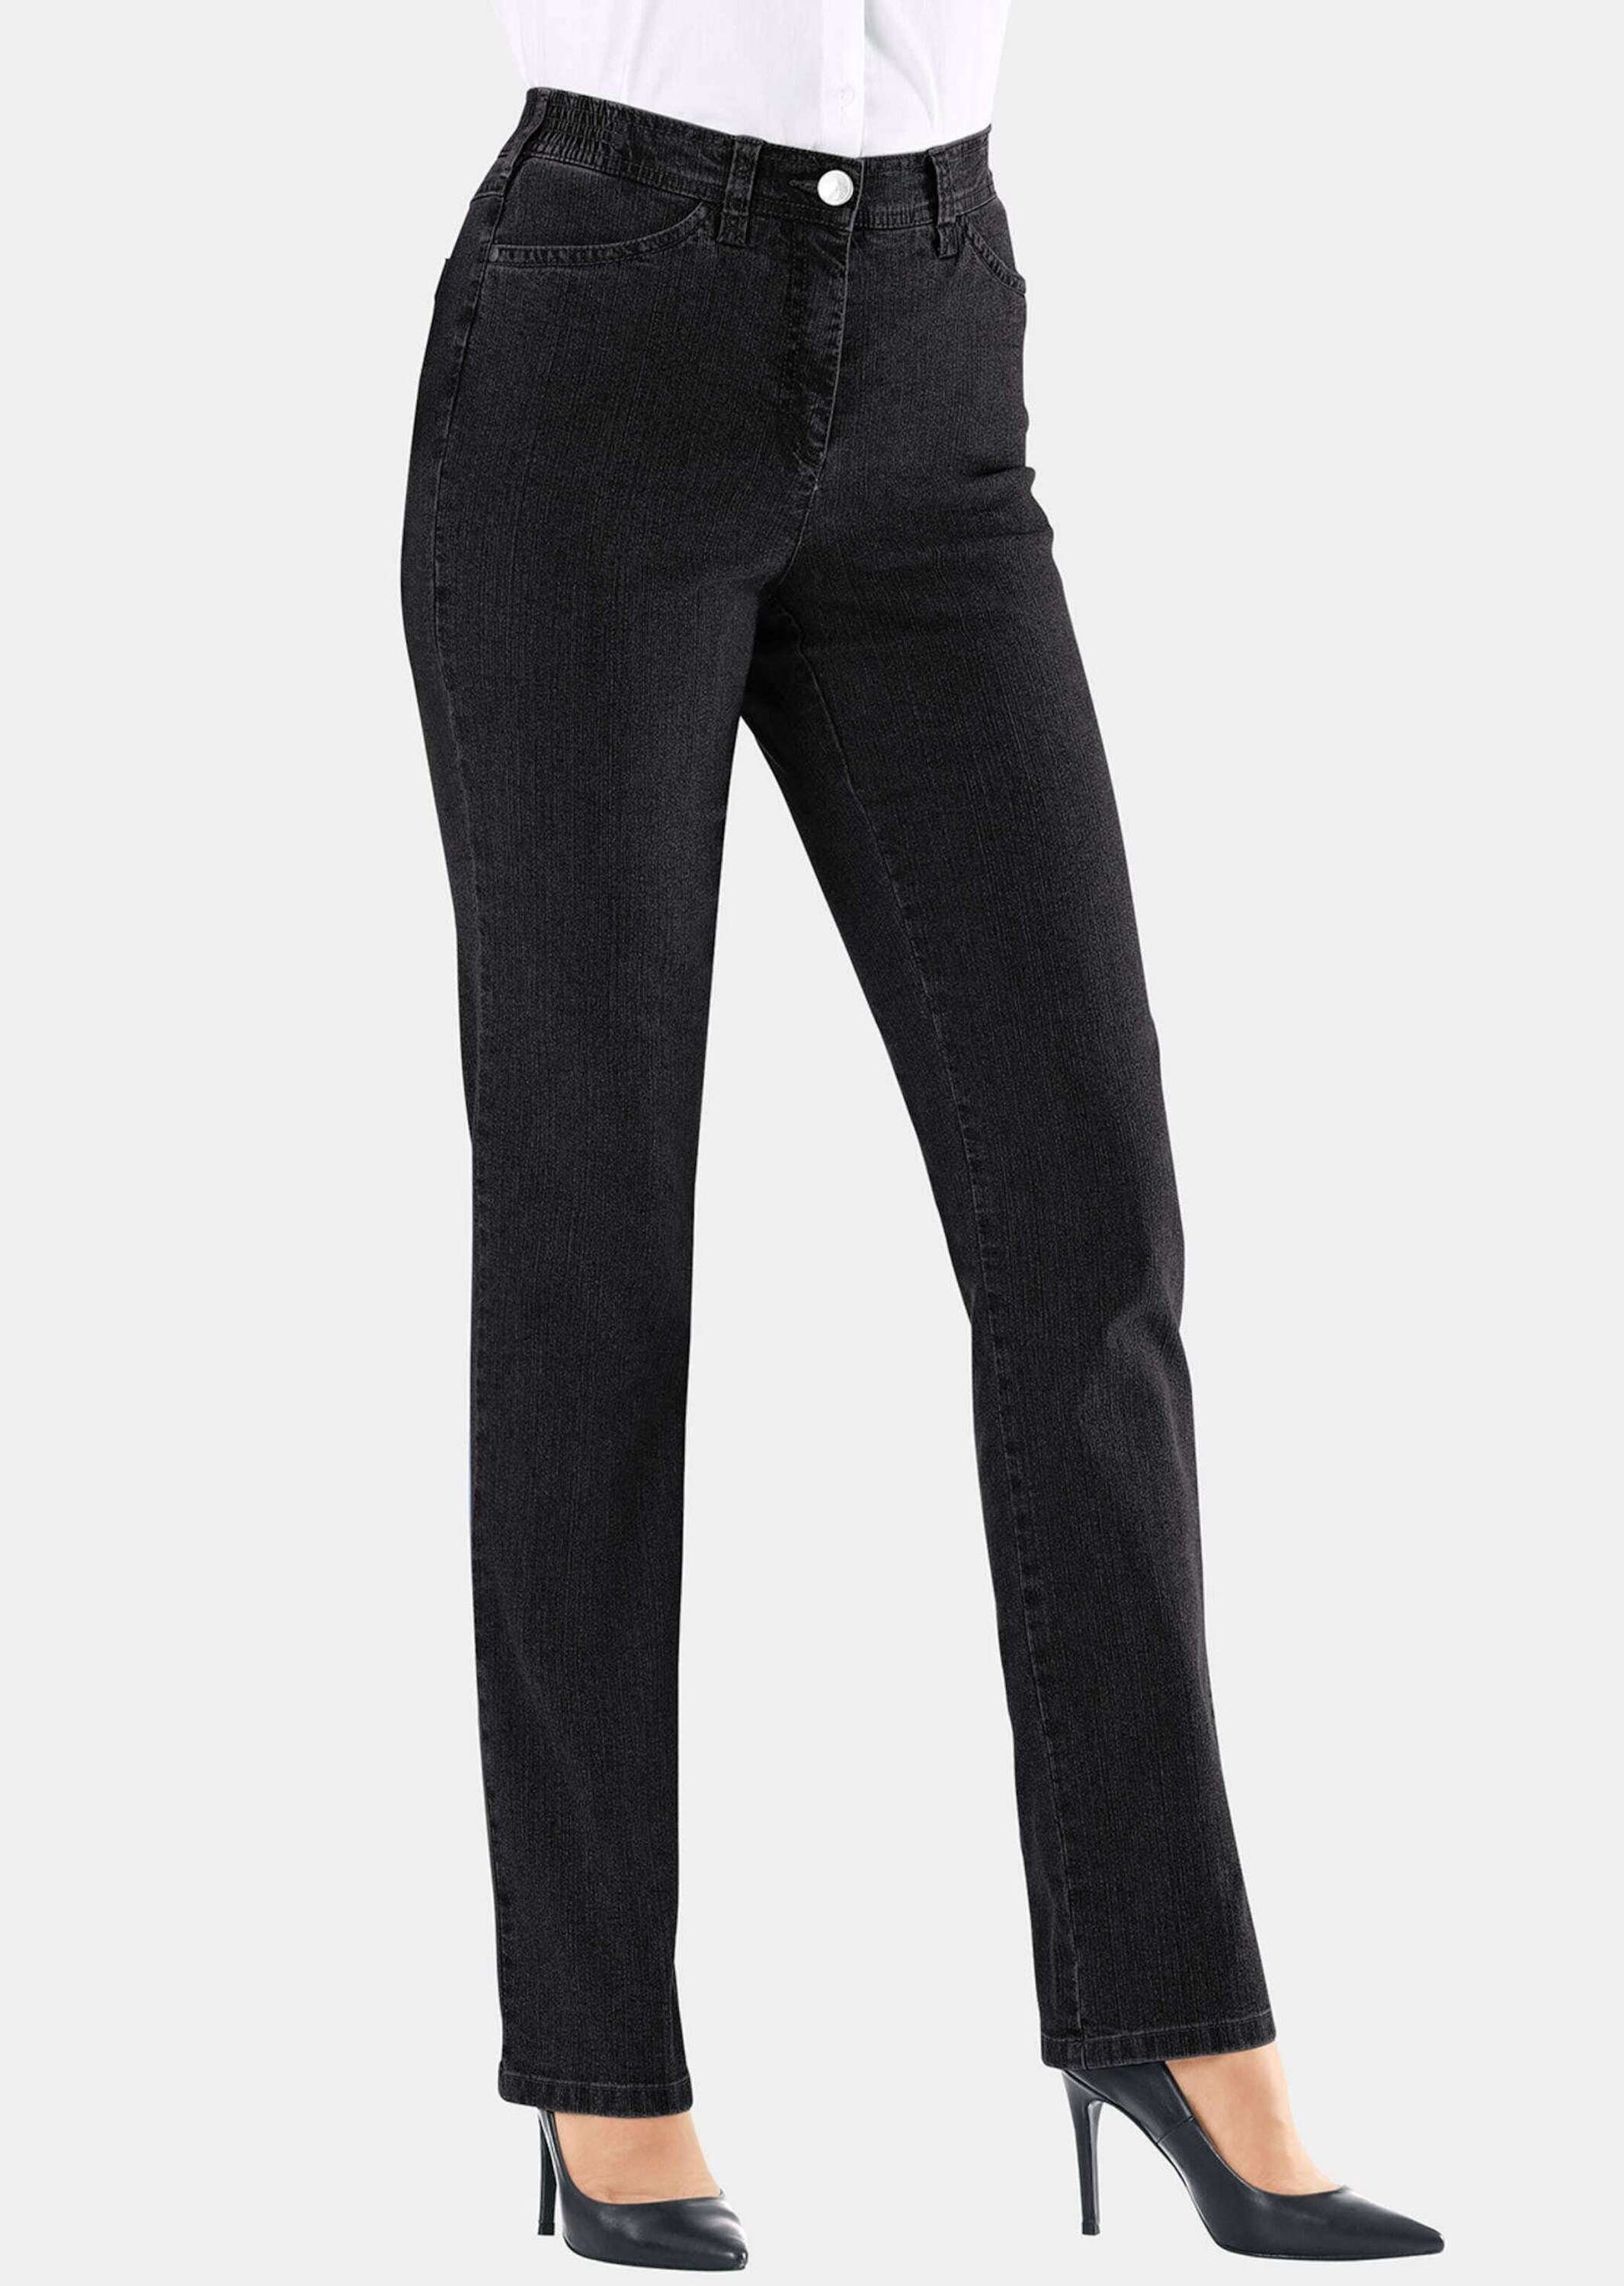 GOLDNER Bequeme Jeans Kurzgröße: Klassische Jeanshose ANNA schwarz